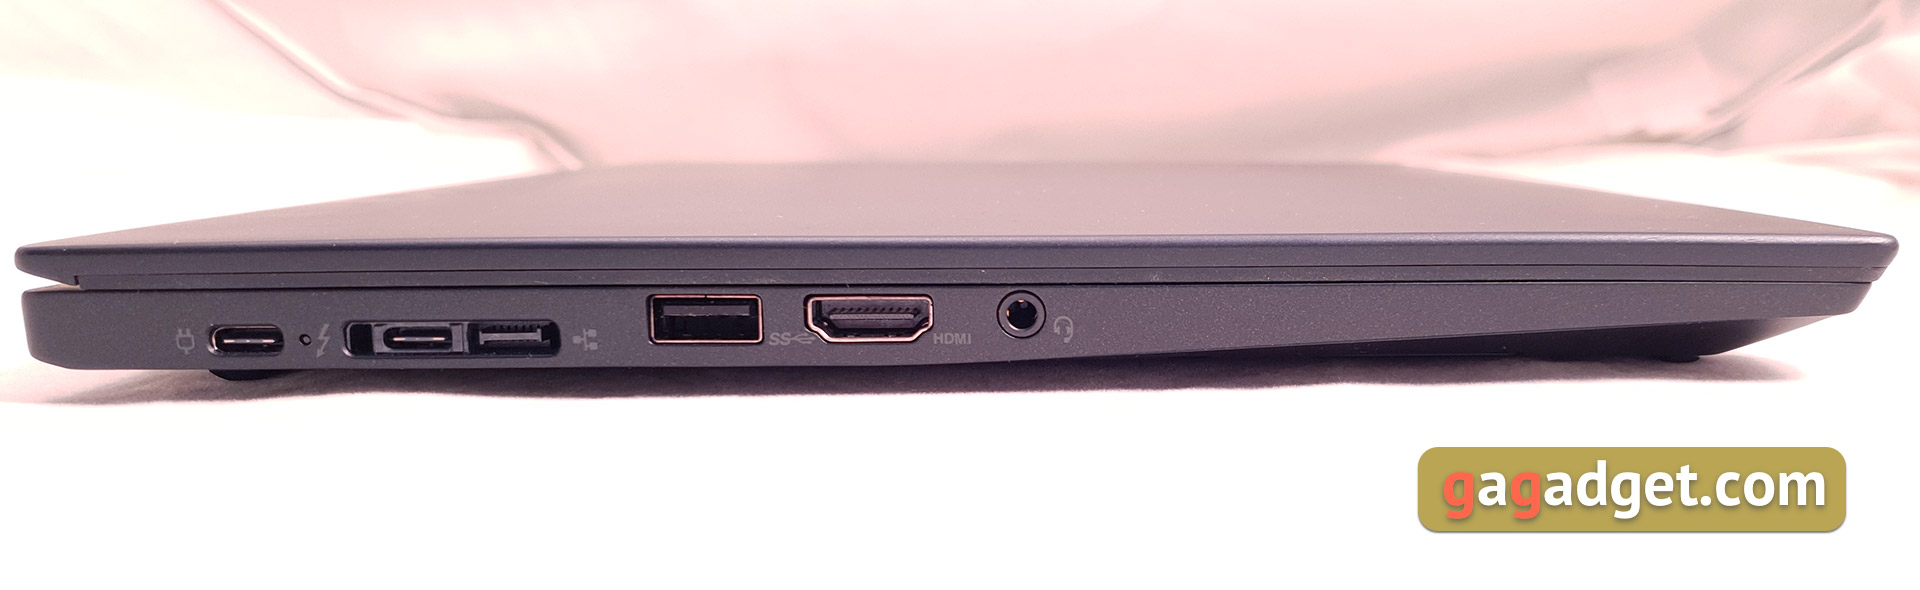 Recenzja Notebooka Lenovo ThinkPad T490s: szczery pracownik-11